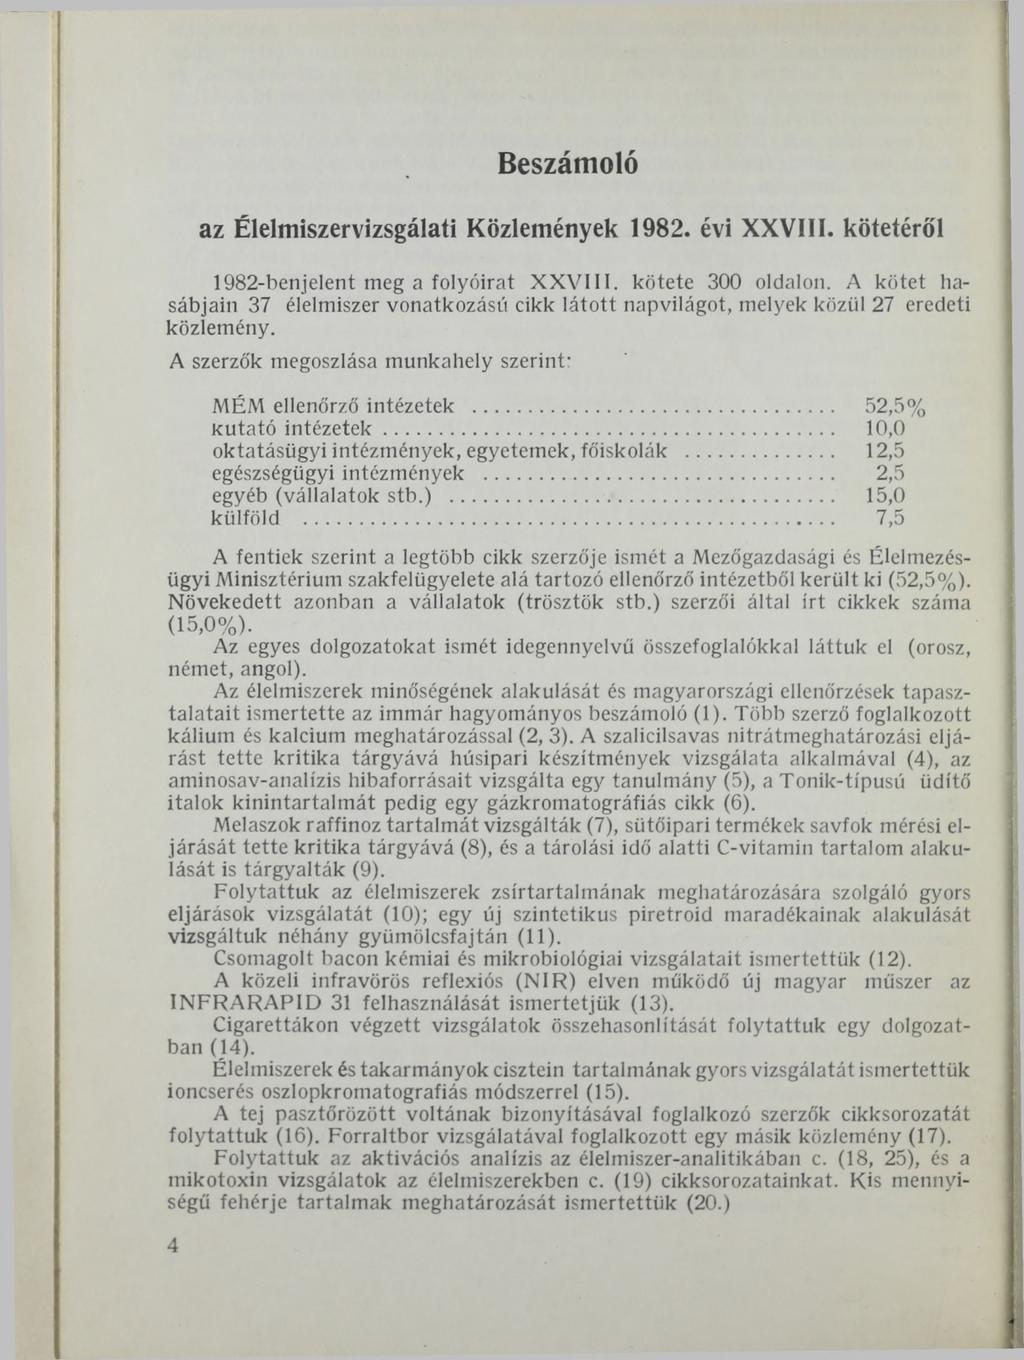 Beszámoló az Élelmiszervizsgálati Közlemények 1982. évi XXVIII. kötetéről 1982-benjelent meg a folyóirat XXVIII. kötete 300 oldalon.